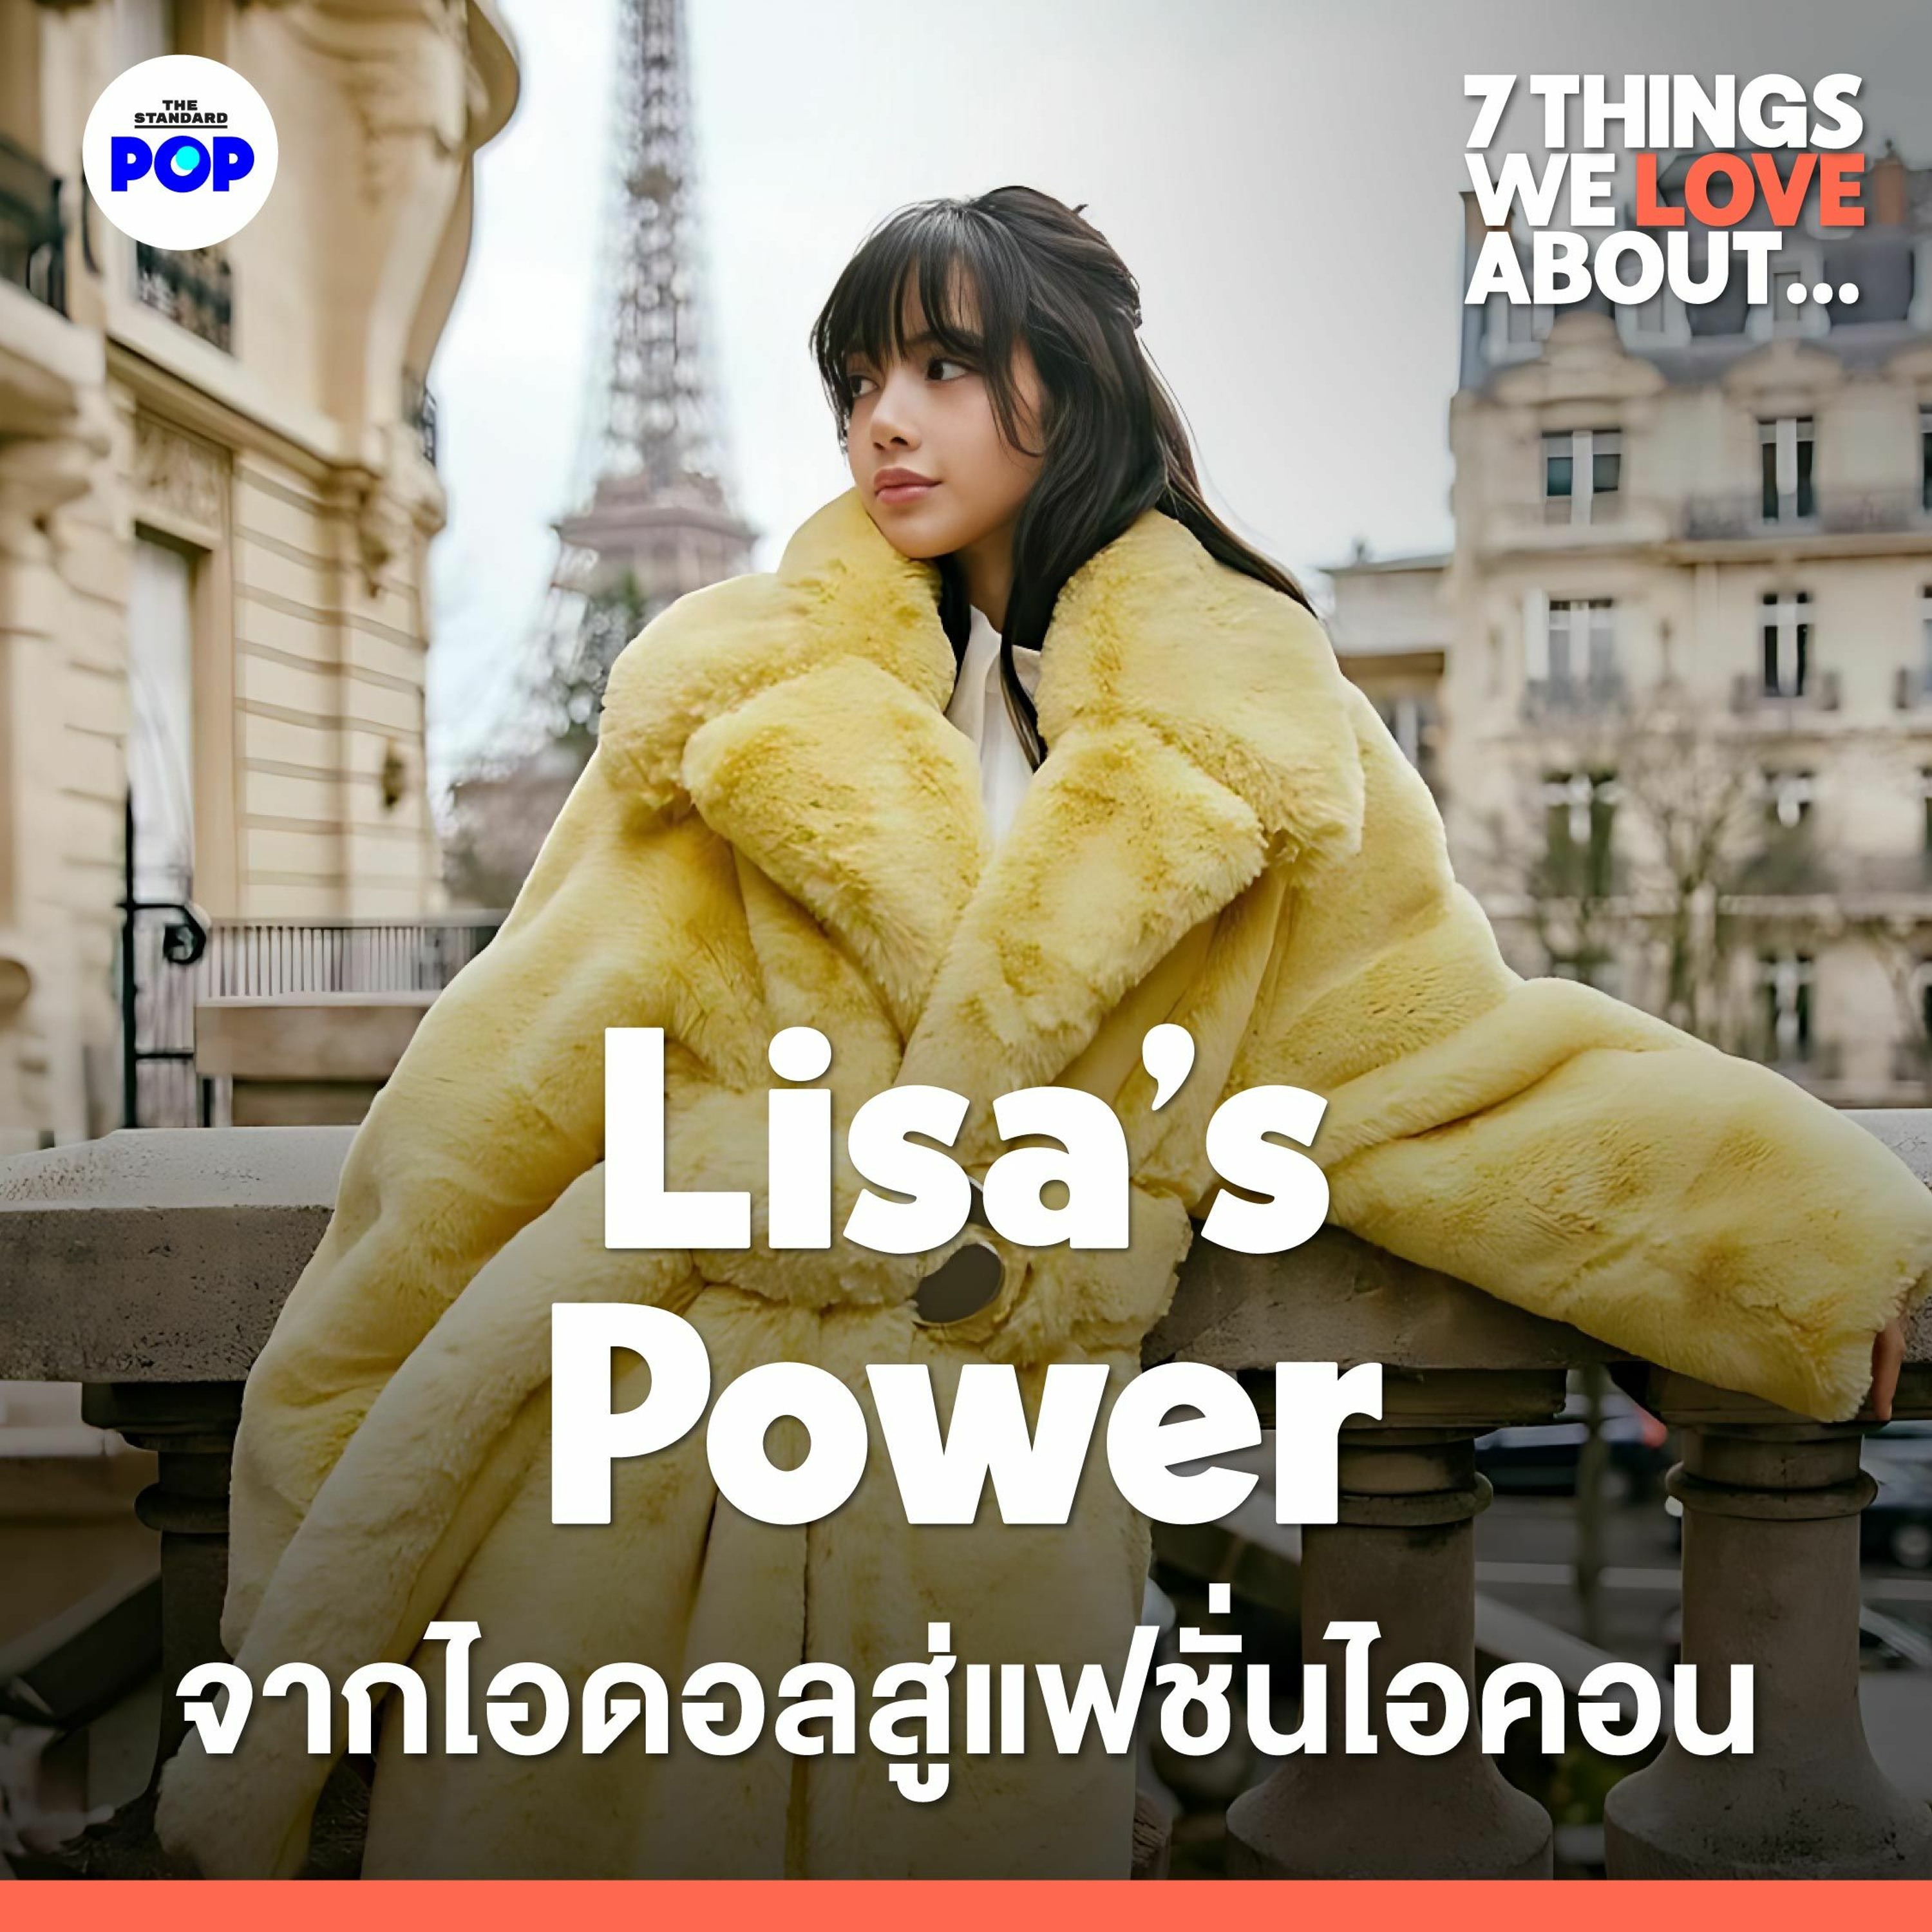 7 Things We Love About... EP.1 | 7 สิ่งที่ทำให้ Lisa กลายเป็นแฟชั่นไอคอนระดับโลก